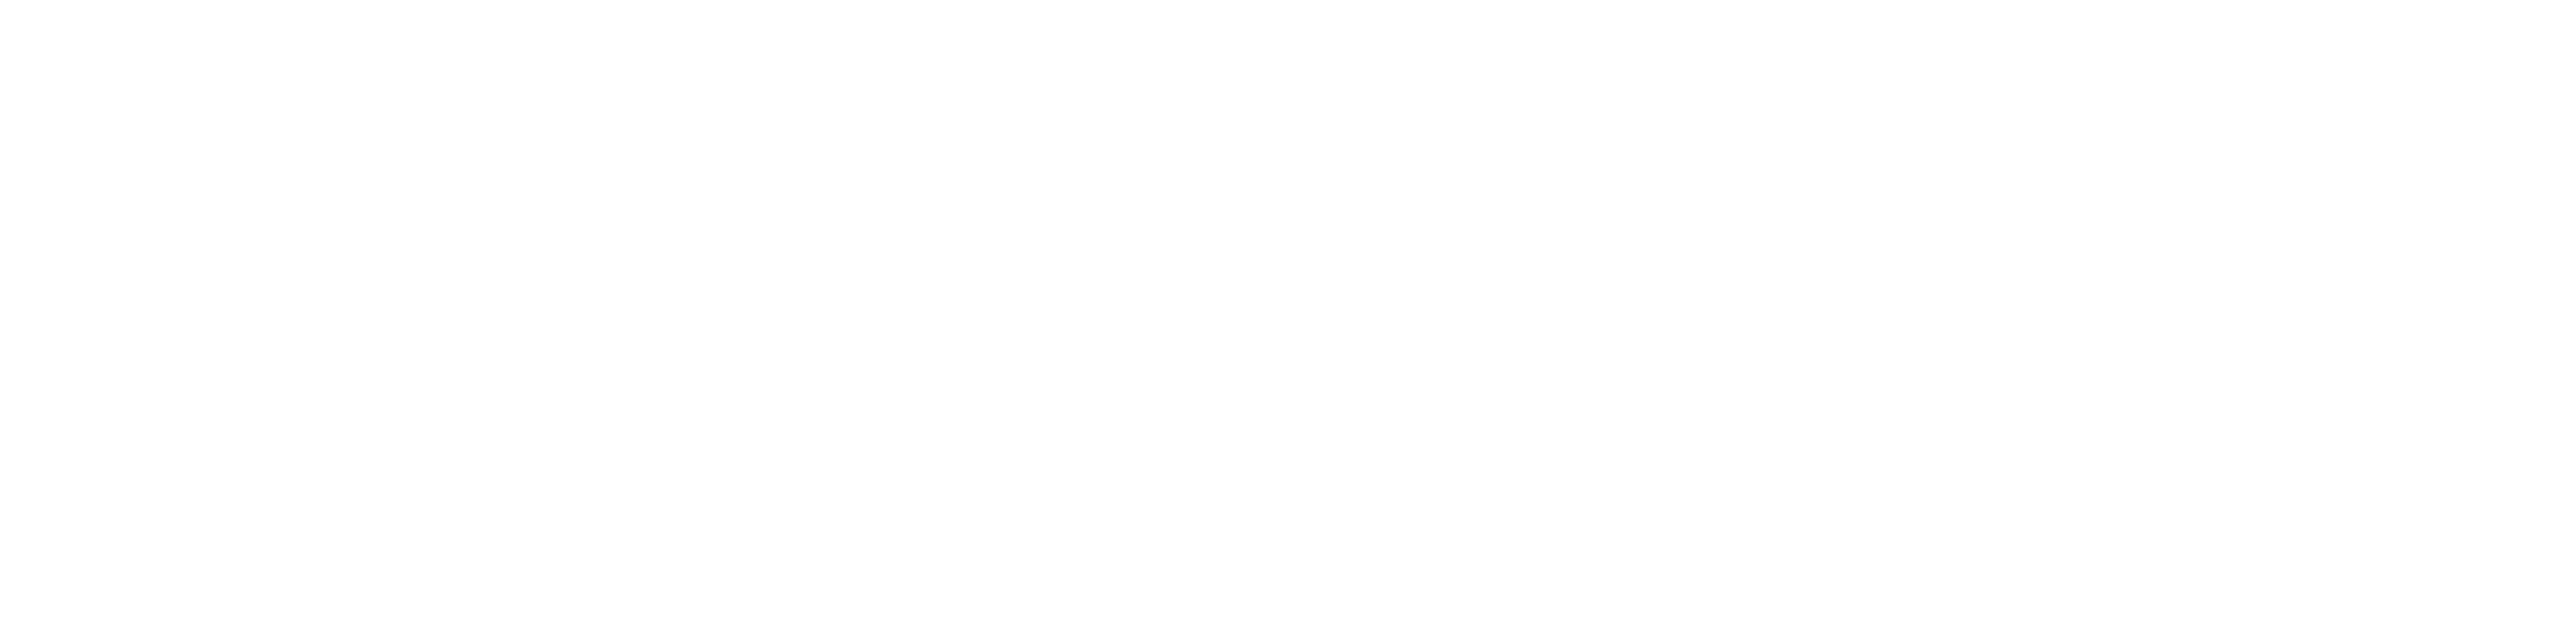 Nobu Hotel Toronto